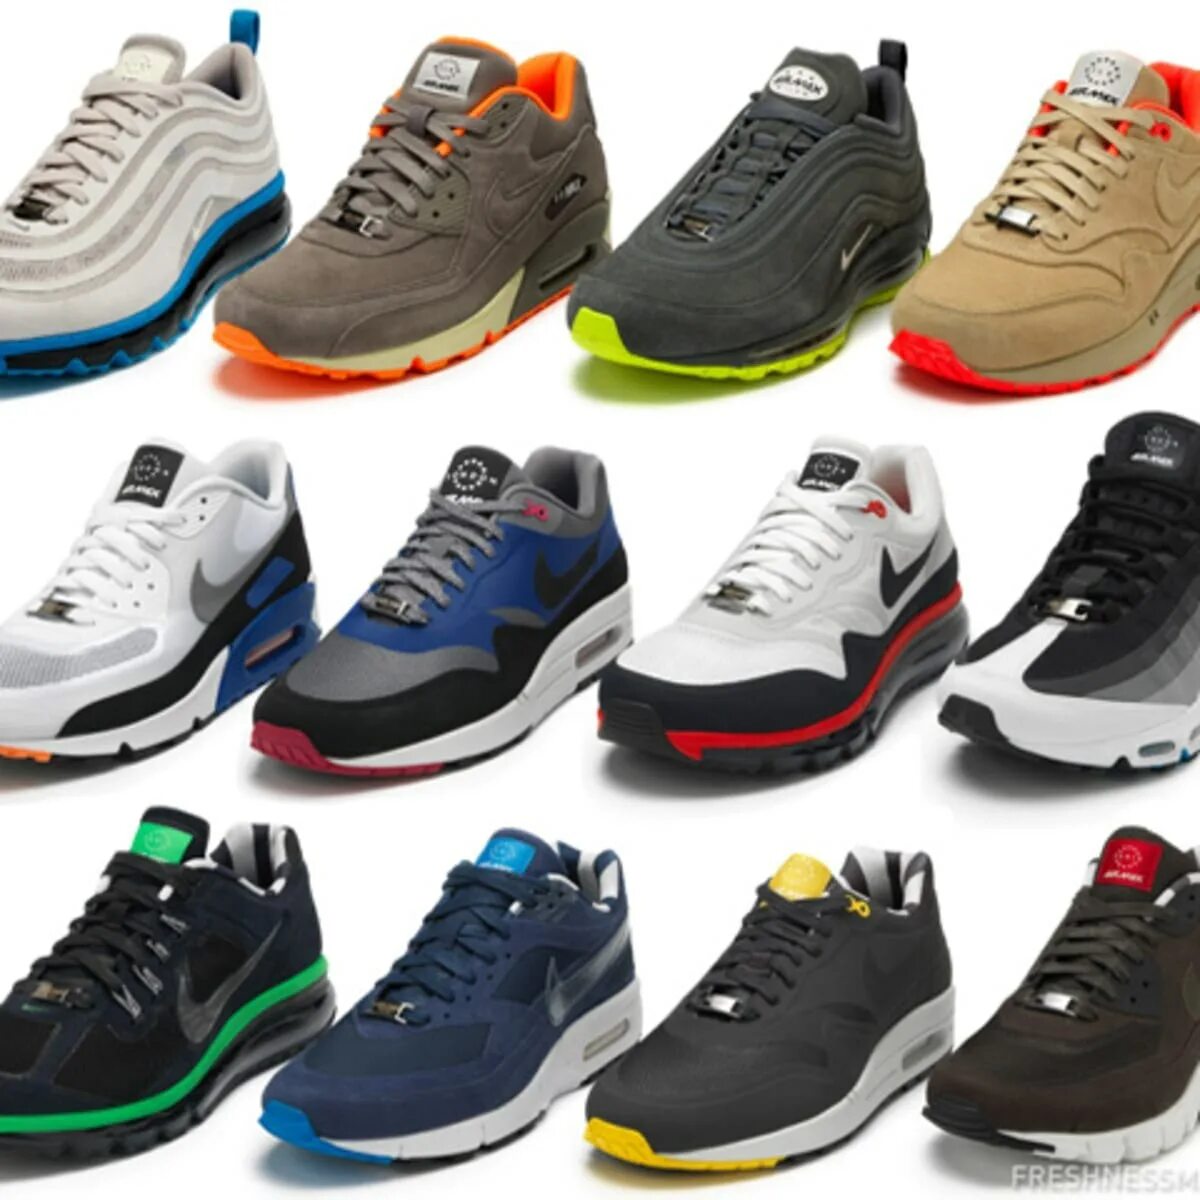 Обувь и красофка мужское 2022. Nike Air Max коллекция 2022г. Обувь мужская найк Эйр. Кроссовки мужские фашион Air. Одежда обувь купить мужские